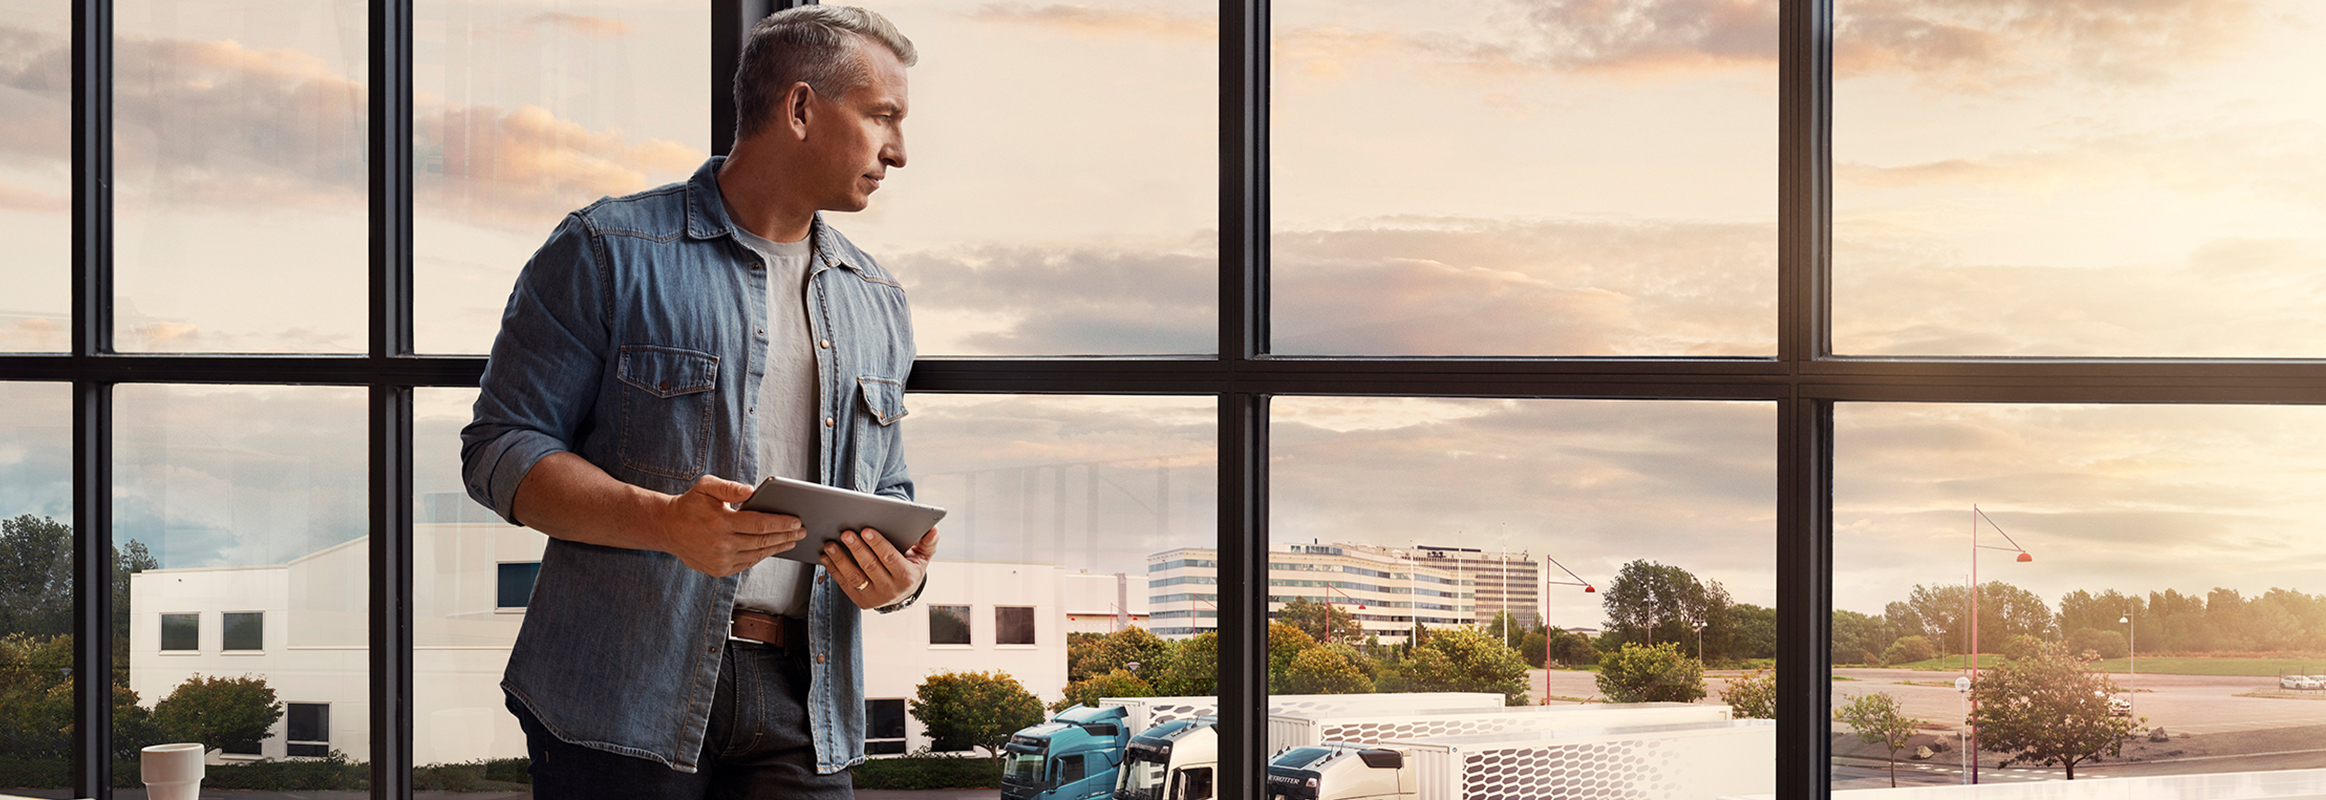 Muž držící tablet stojí u okna a dívá se dolů na svůj vozový park